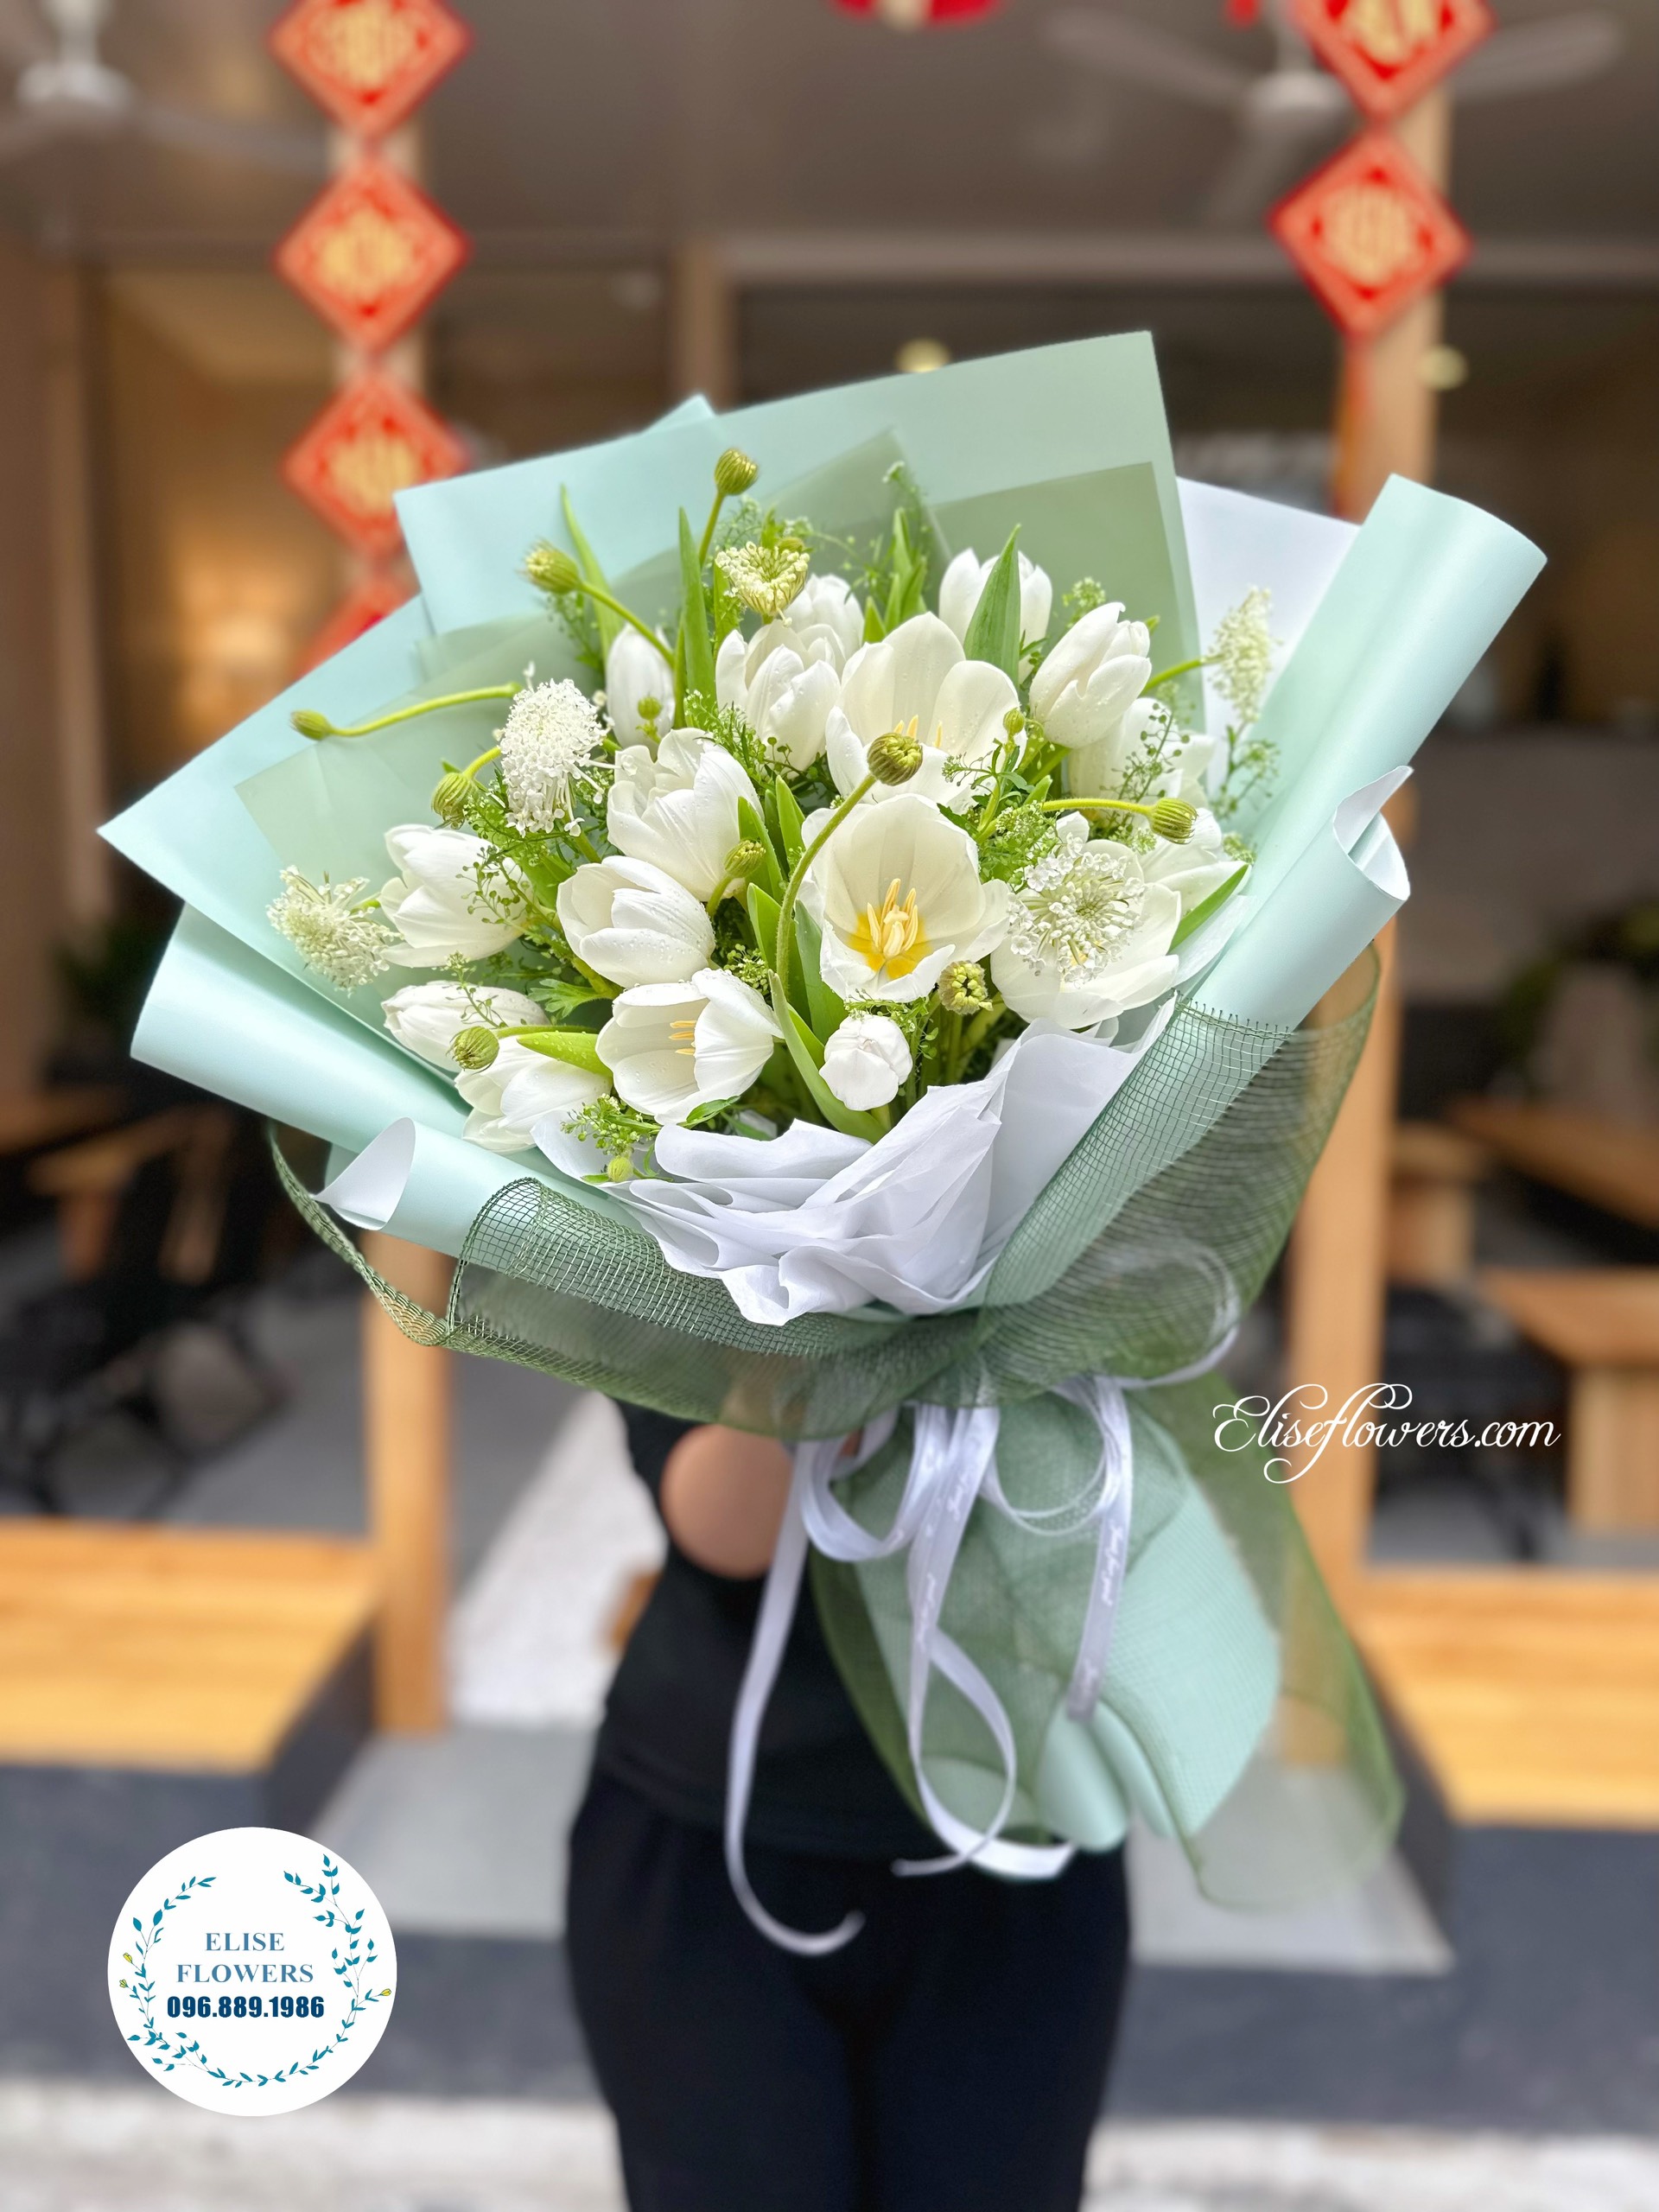 Bó hoa tulip đep tặng bạn gai, người yêu, vợ yêu ở Hà Nội. Đặt mua hoa tulip đẹp ở Hà Nội. Elise Flowers